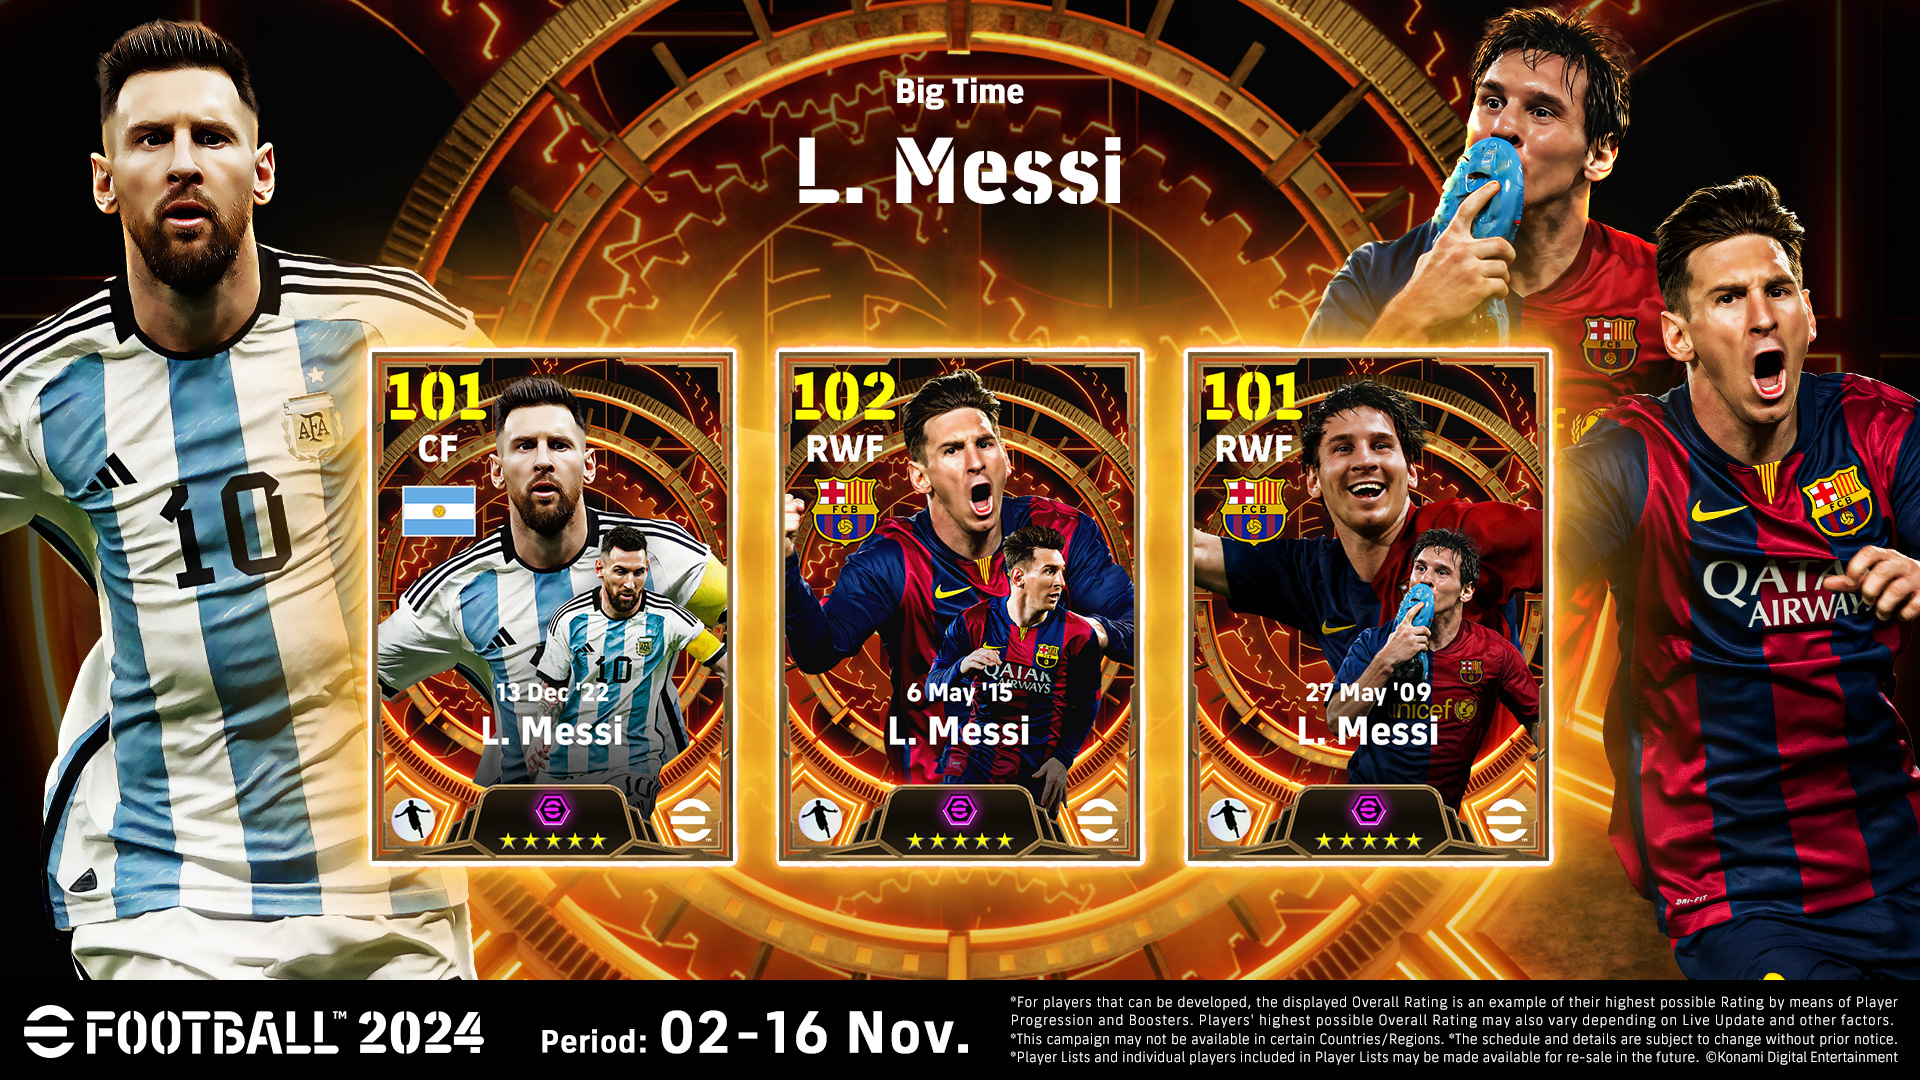 eFootball 2024 - Botschafter Lionel Messi mit neuen Modi